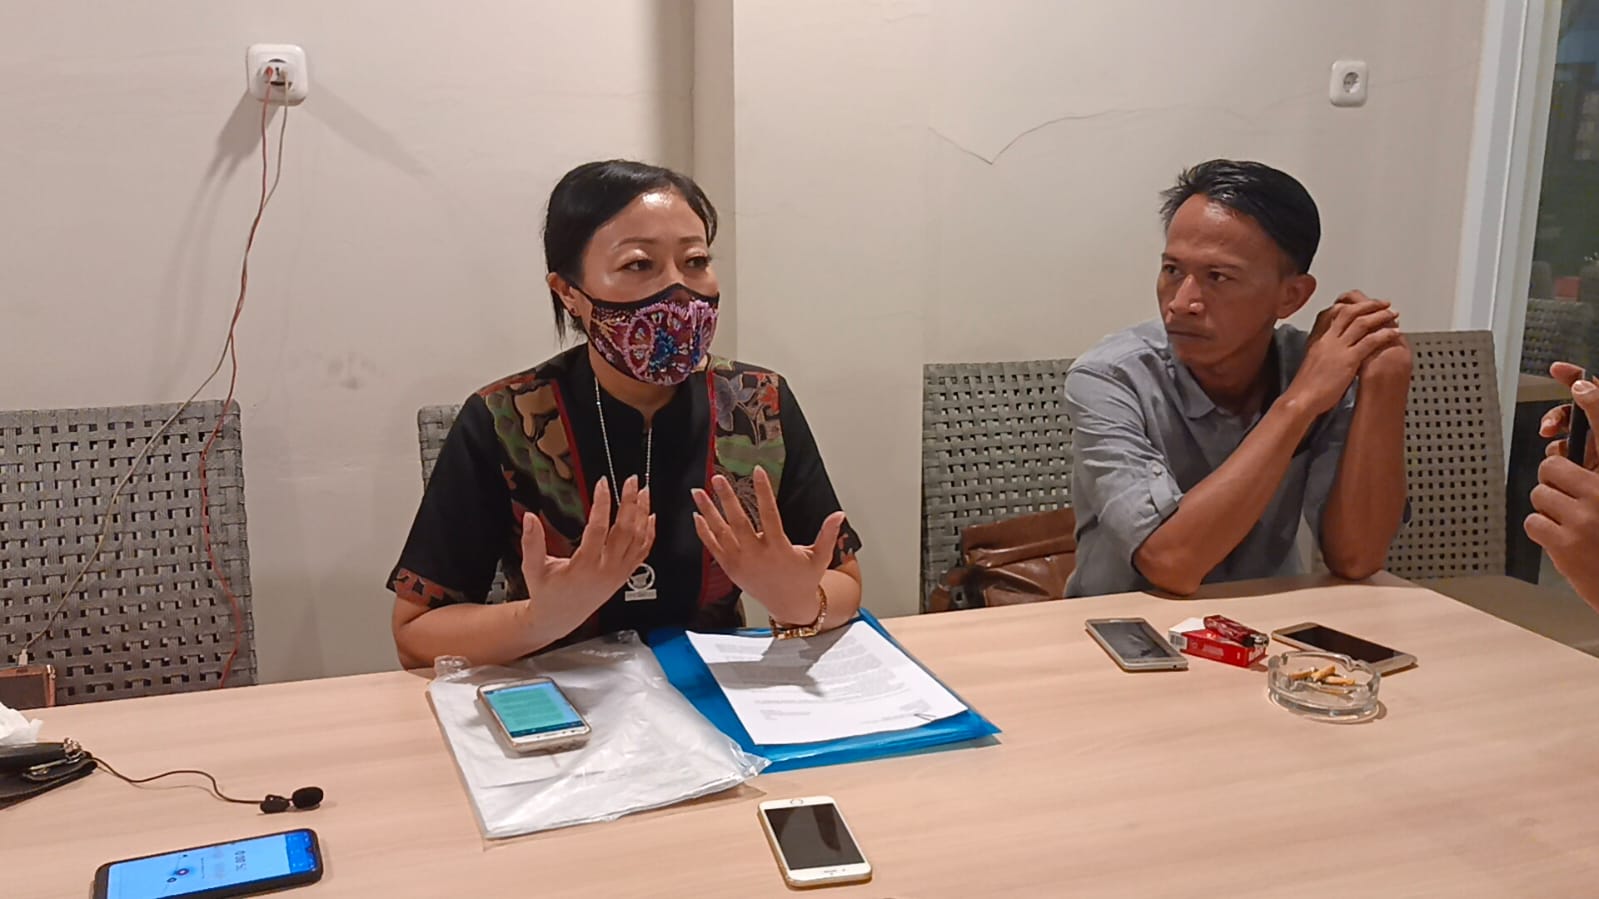 Anggota DPRD Kota Tangerang Epa Emilia saat menunjukkan identitas yang terlibat dengan bisnis dan kasusnya dalam konferensi pers di kawasan Neglasari, Kota Tangerang.